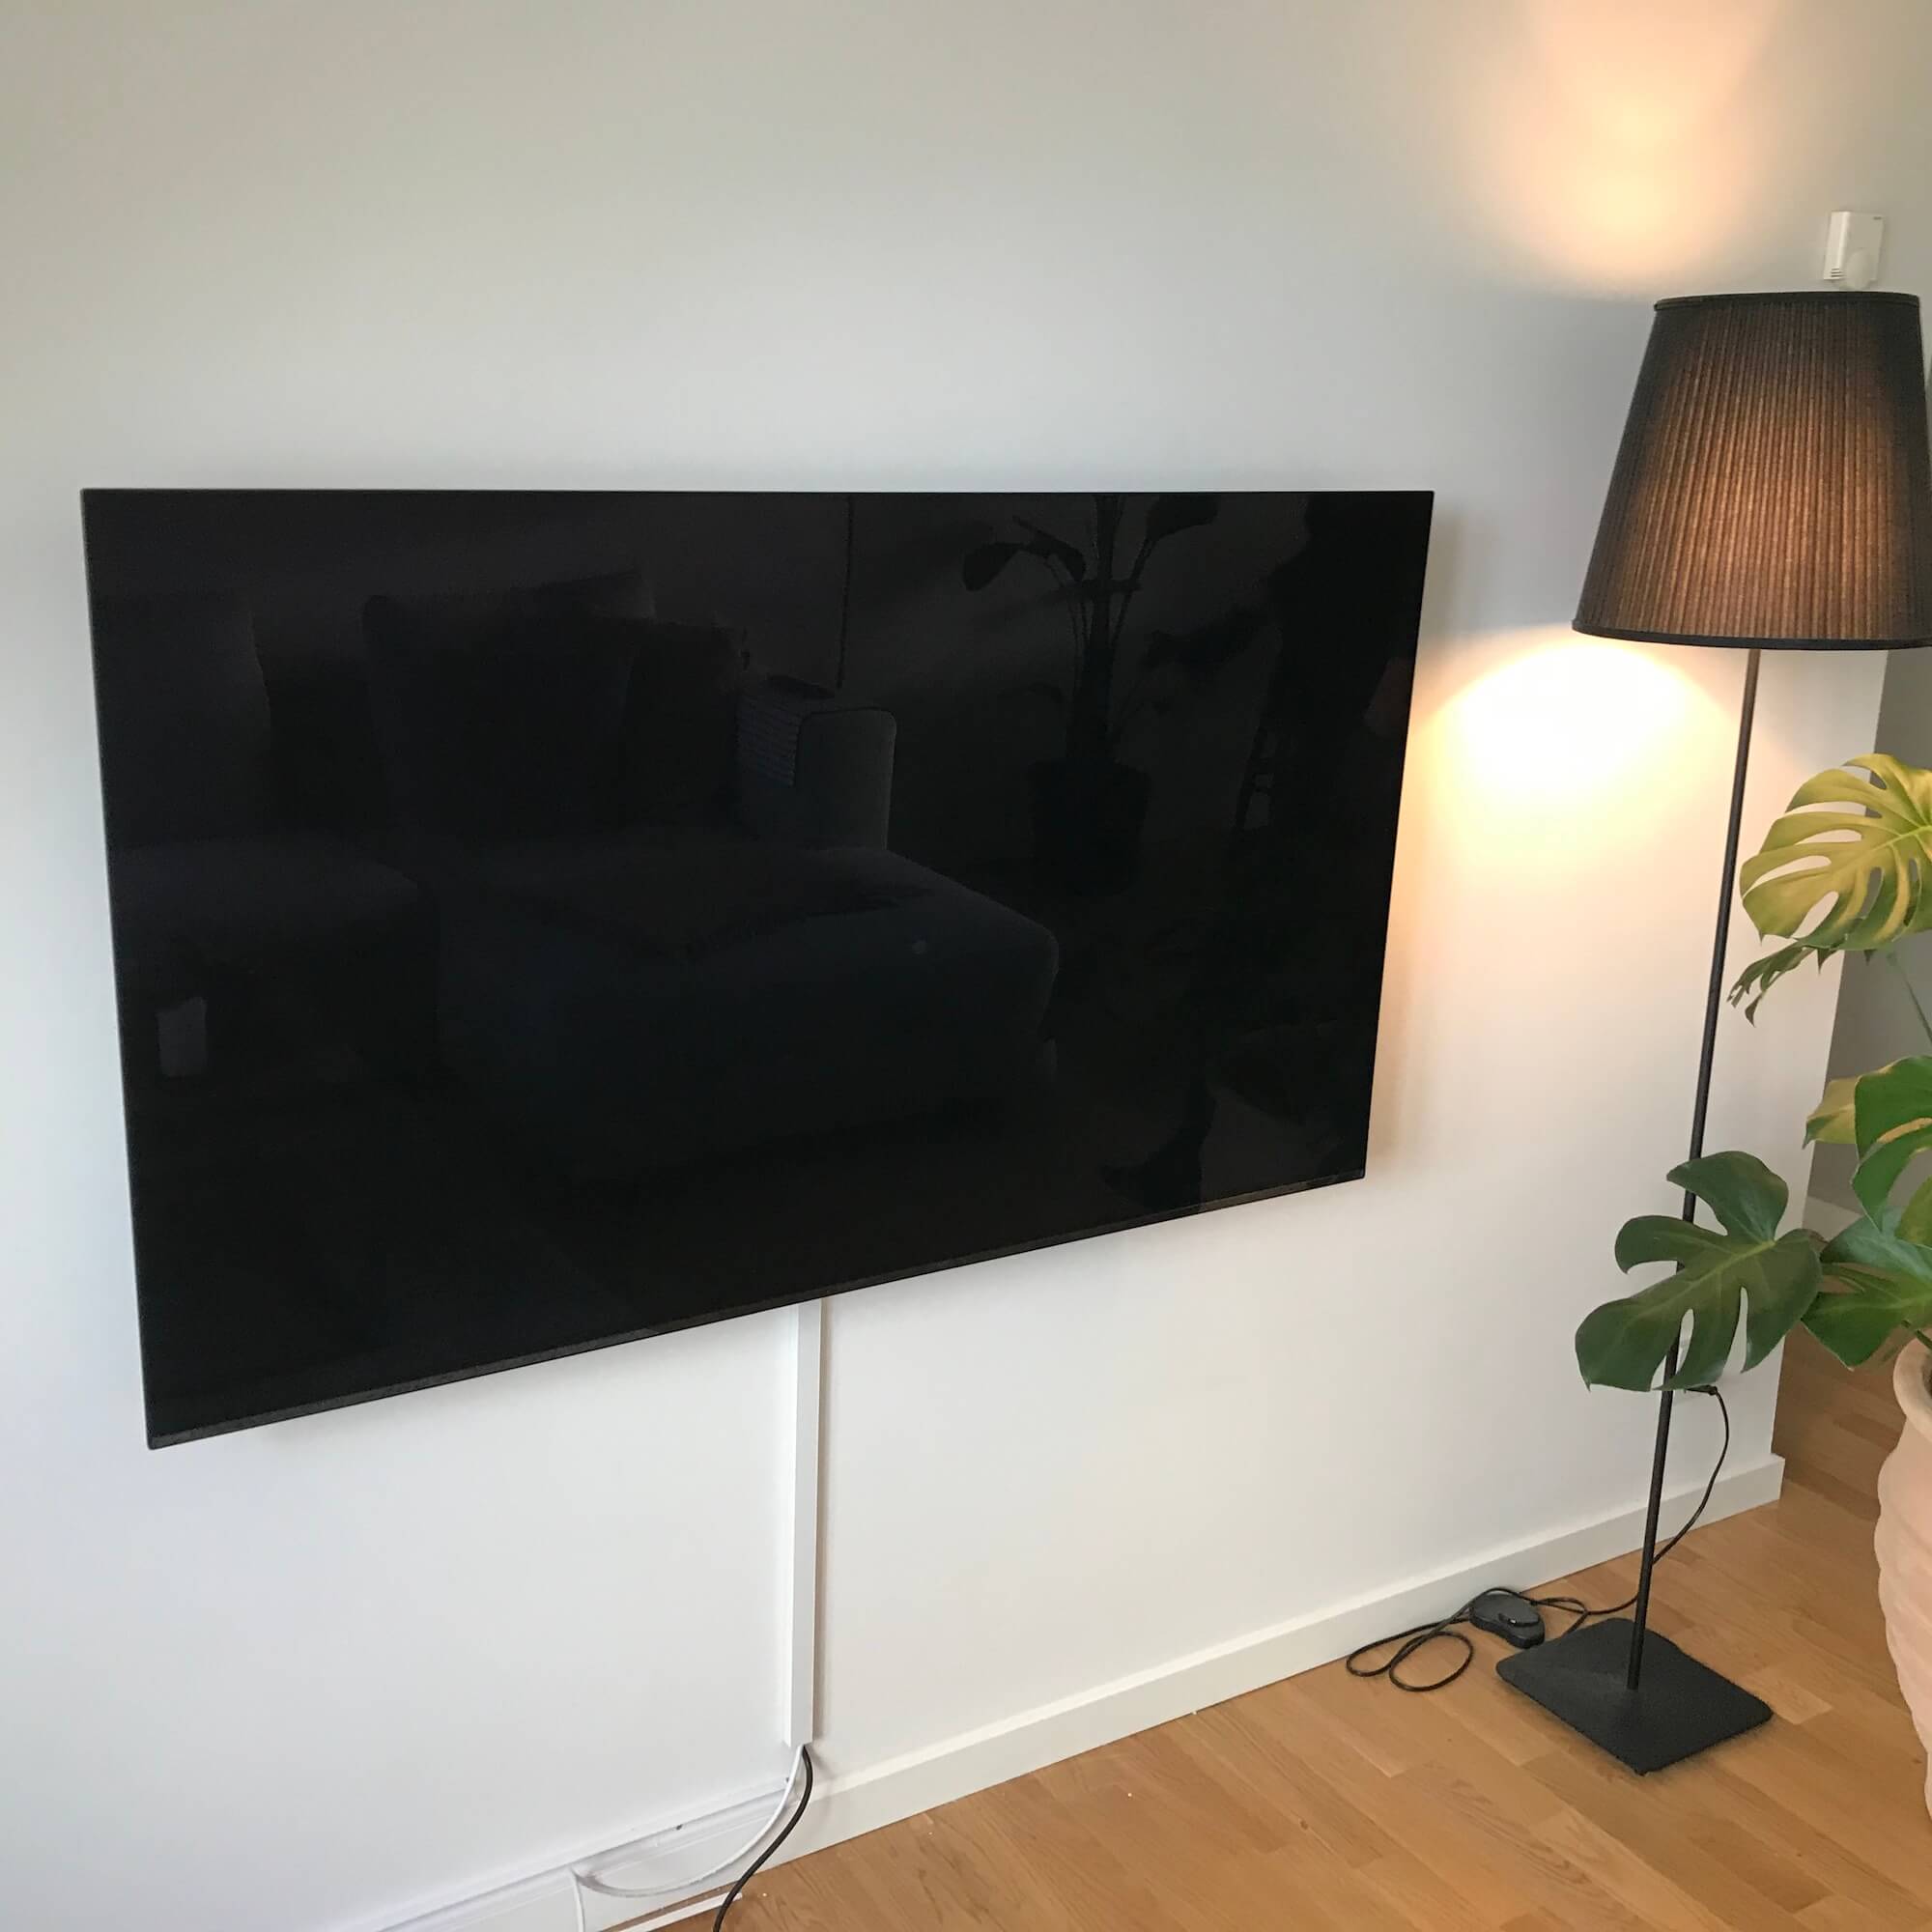 Væg-installation af LG TV